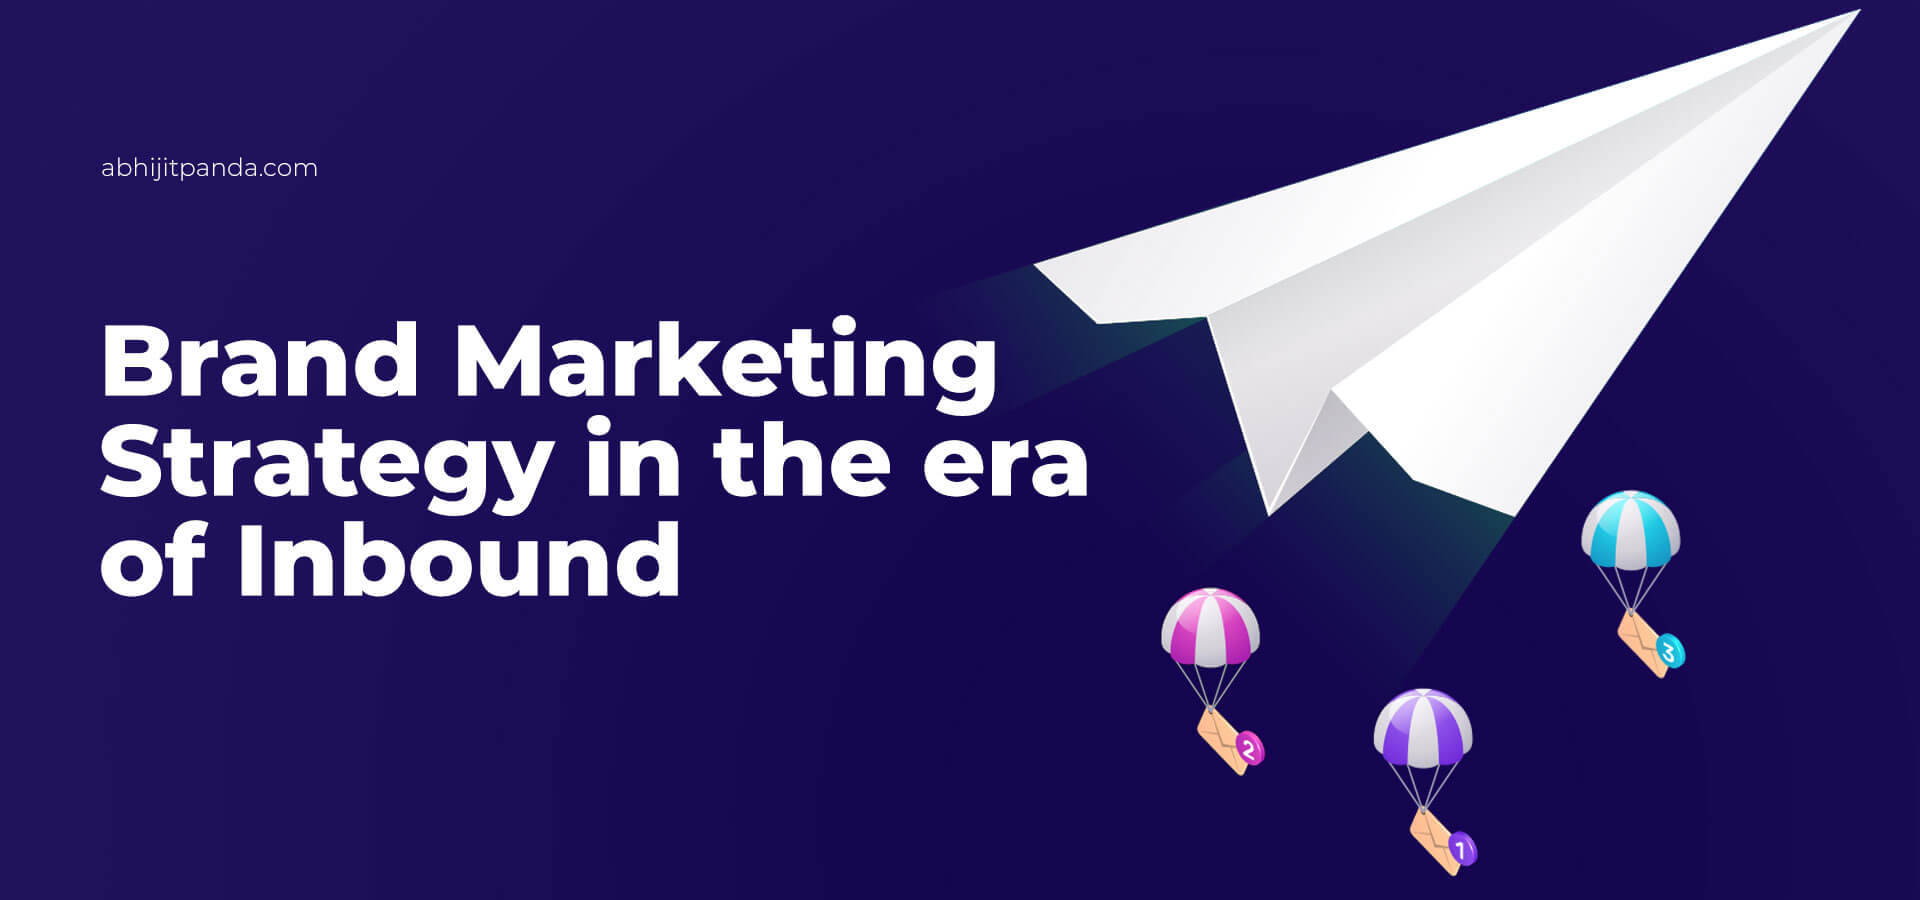 Brand Marketing Strategy in the era of Inbound